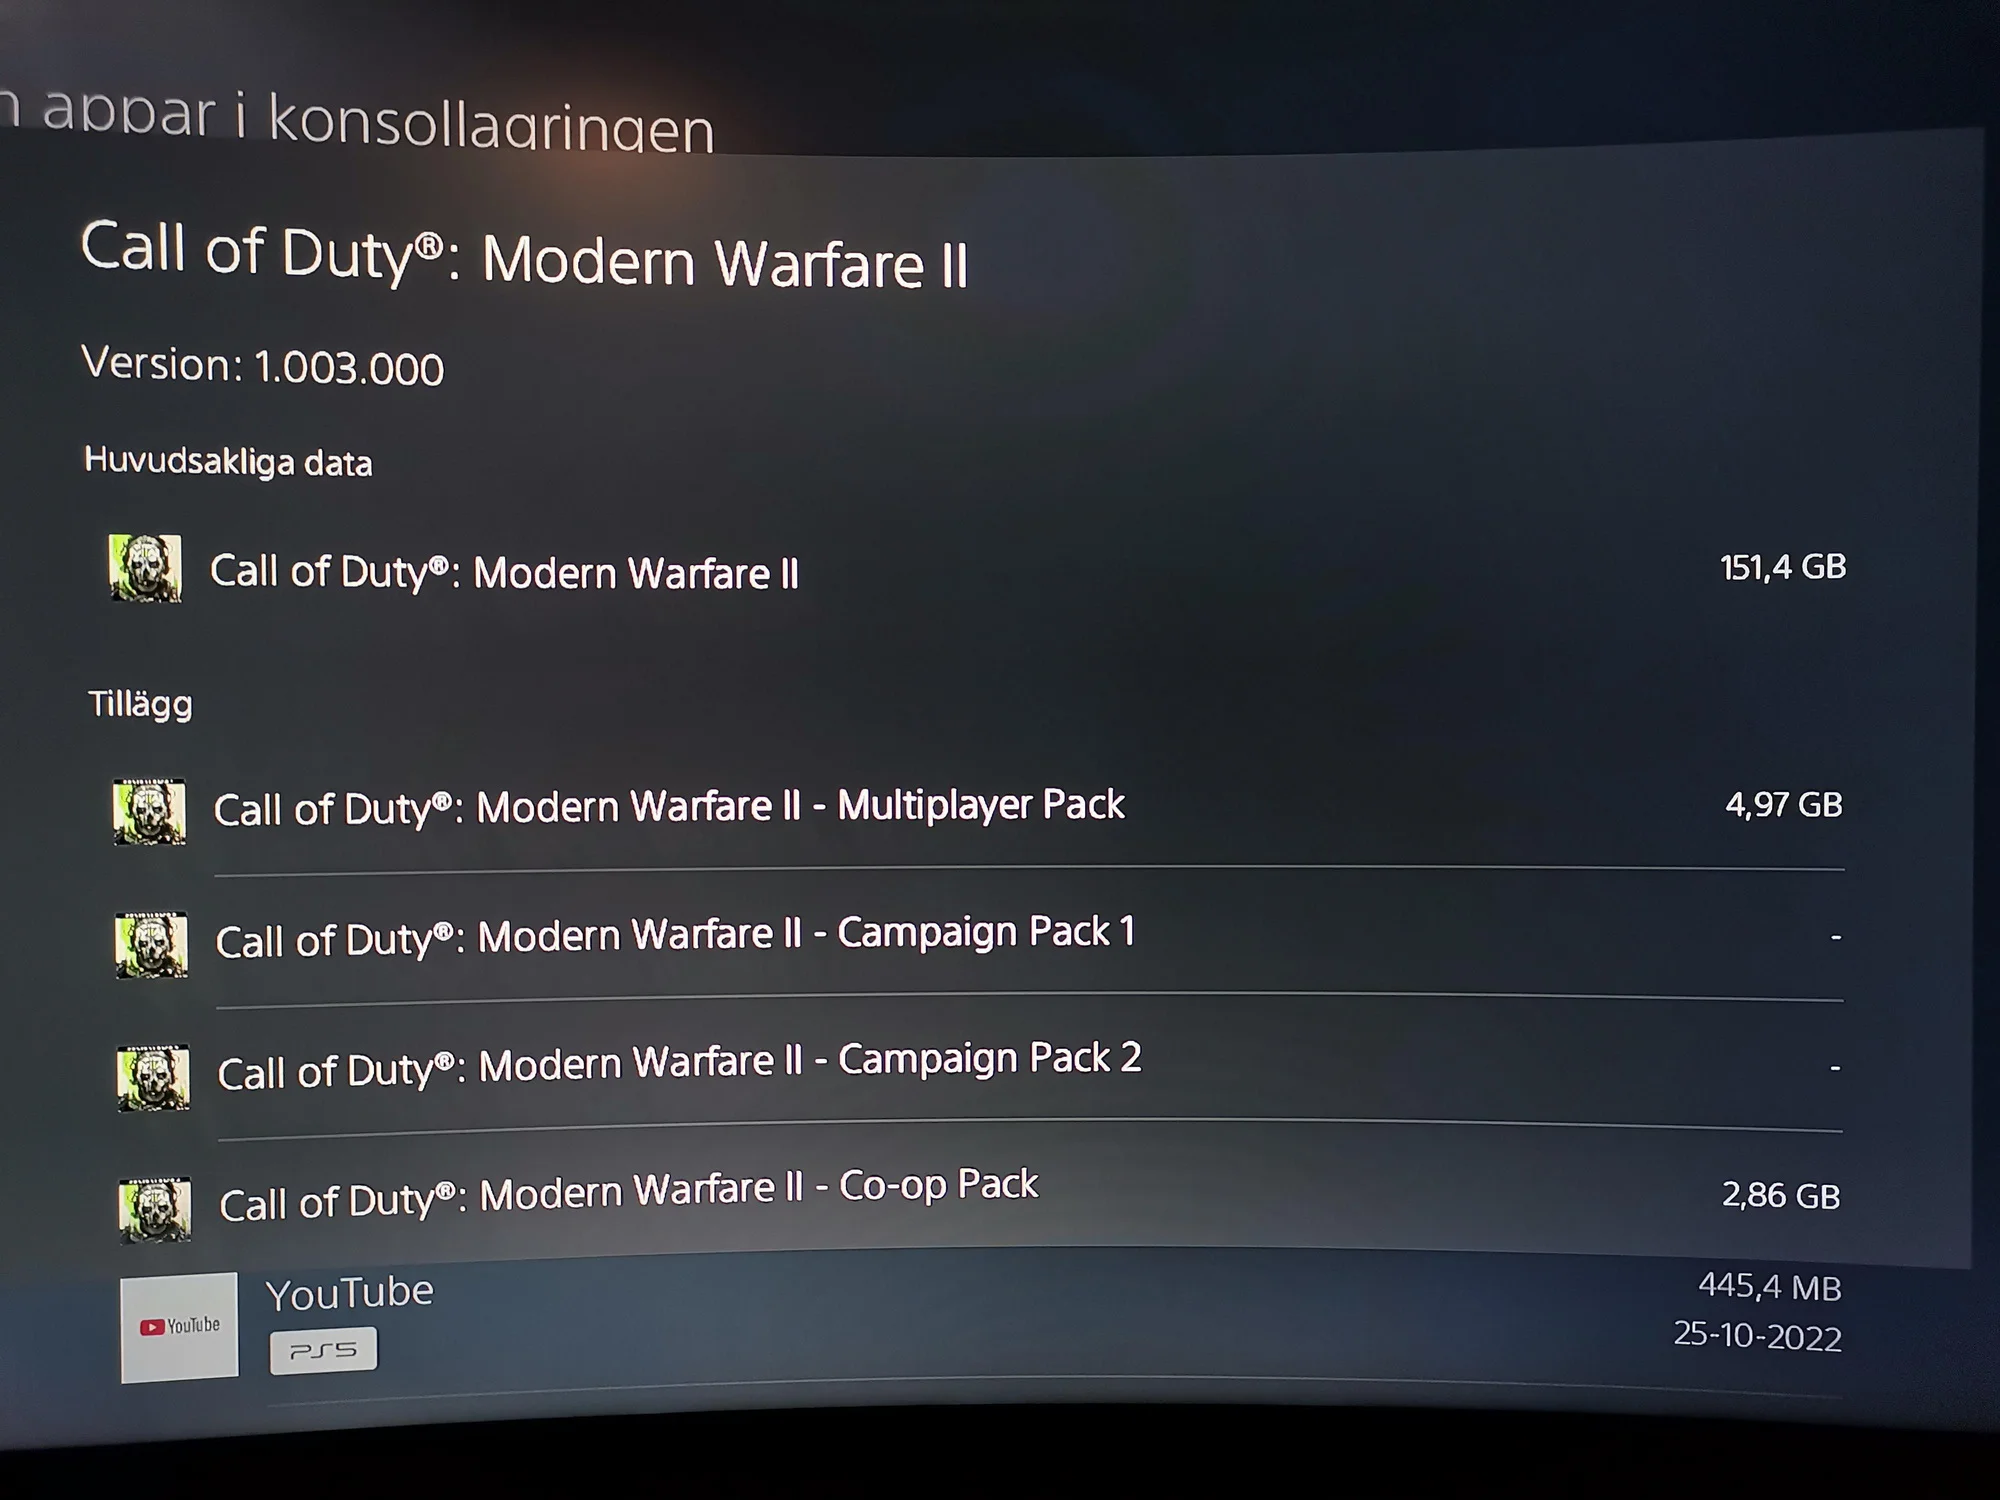 запуск игры невозможен операционная система не поддерживает directx 12 call of duty modern warfare фото 39